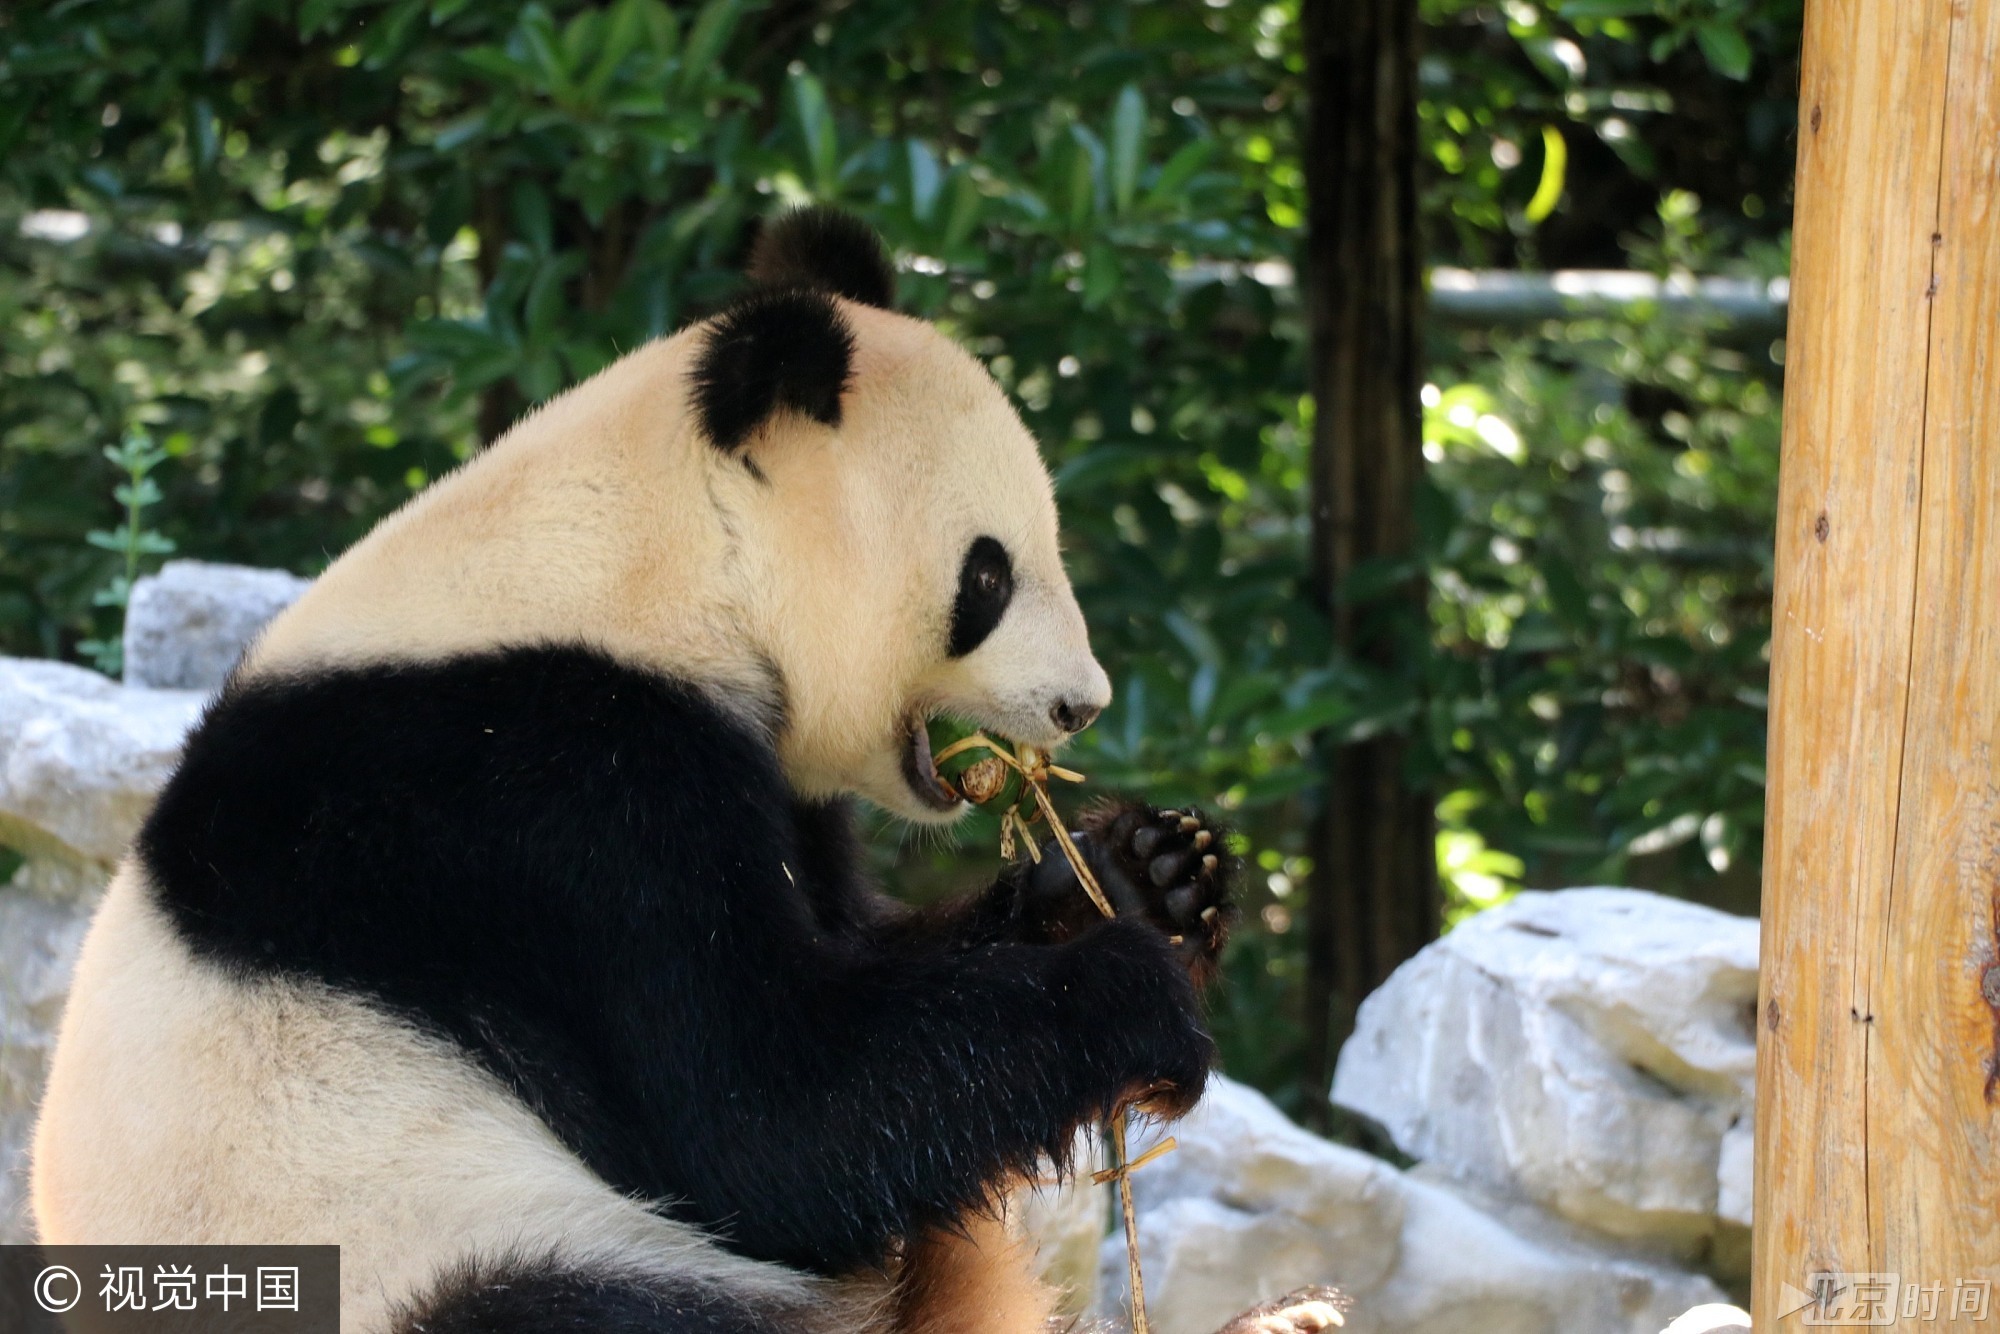 2017年5月26日， 我国传统节日端午节临近，当日，扬州茱萸湾动物园的饲养员用窝窝头、竹粉、苹果等食材为大熊猫、袋鼠等动物精心制作了特殊的粽子，让它们享受美食迎接端午。